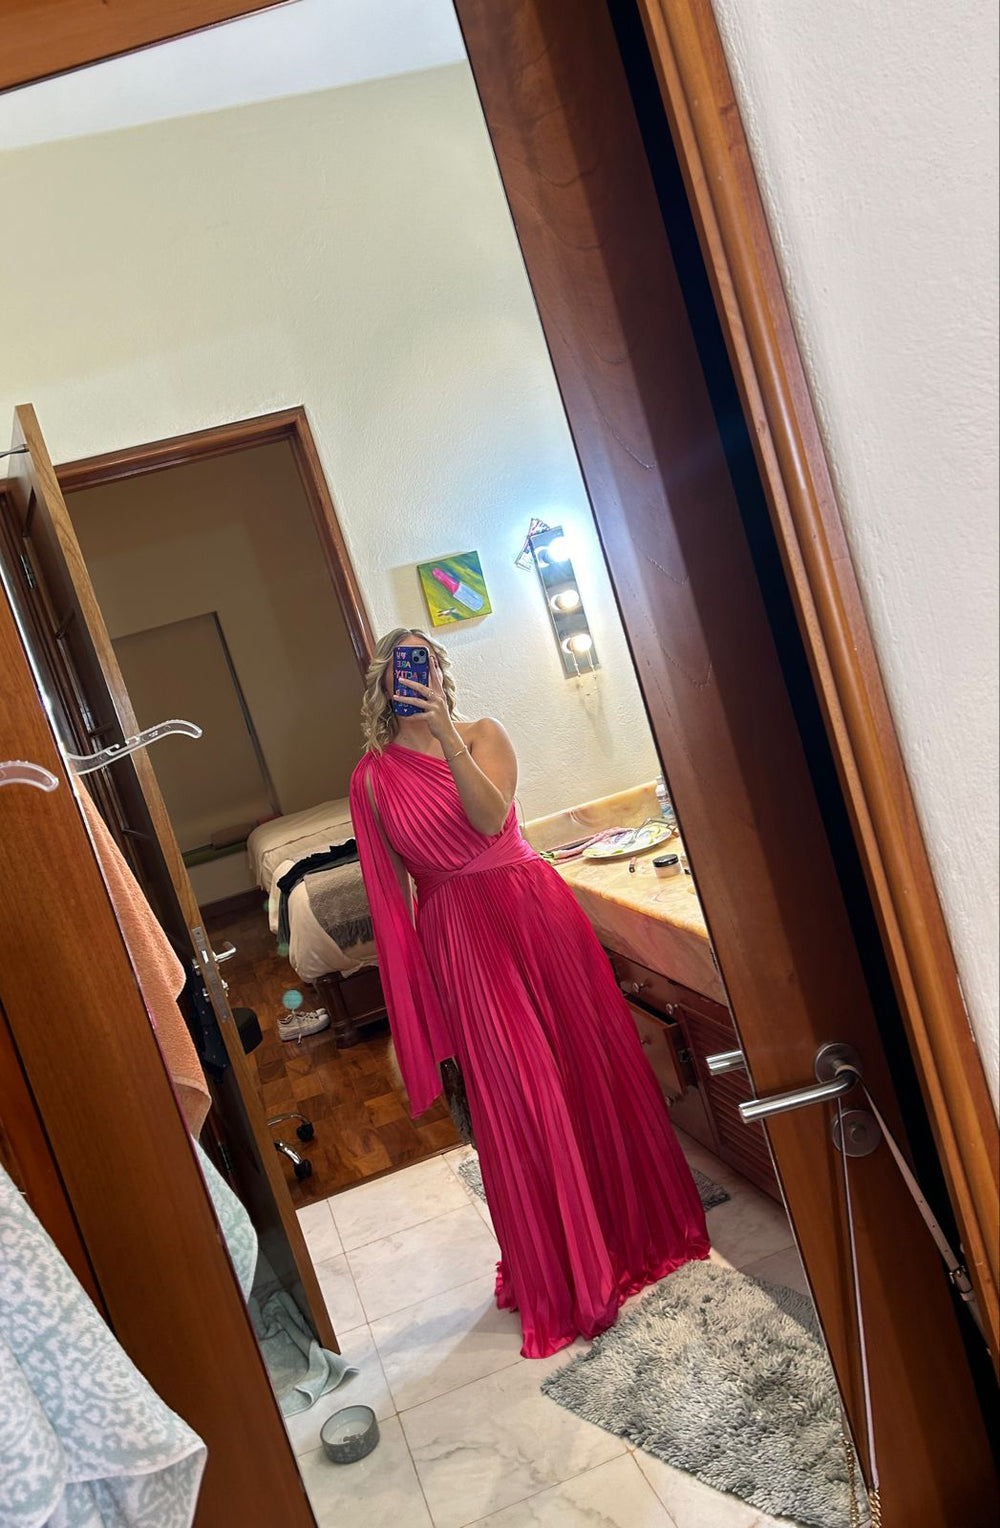 Mabela - rosa fuchsia - Lend the Trend renta de vestidos mexico